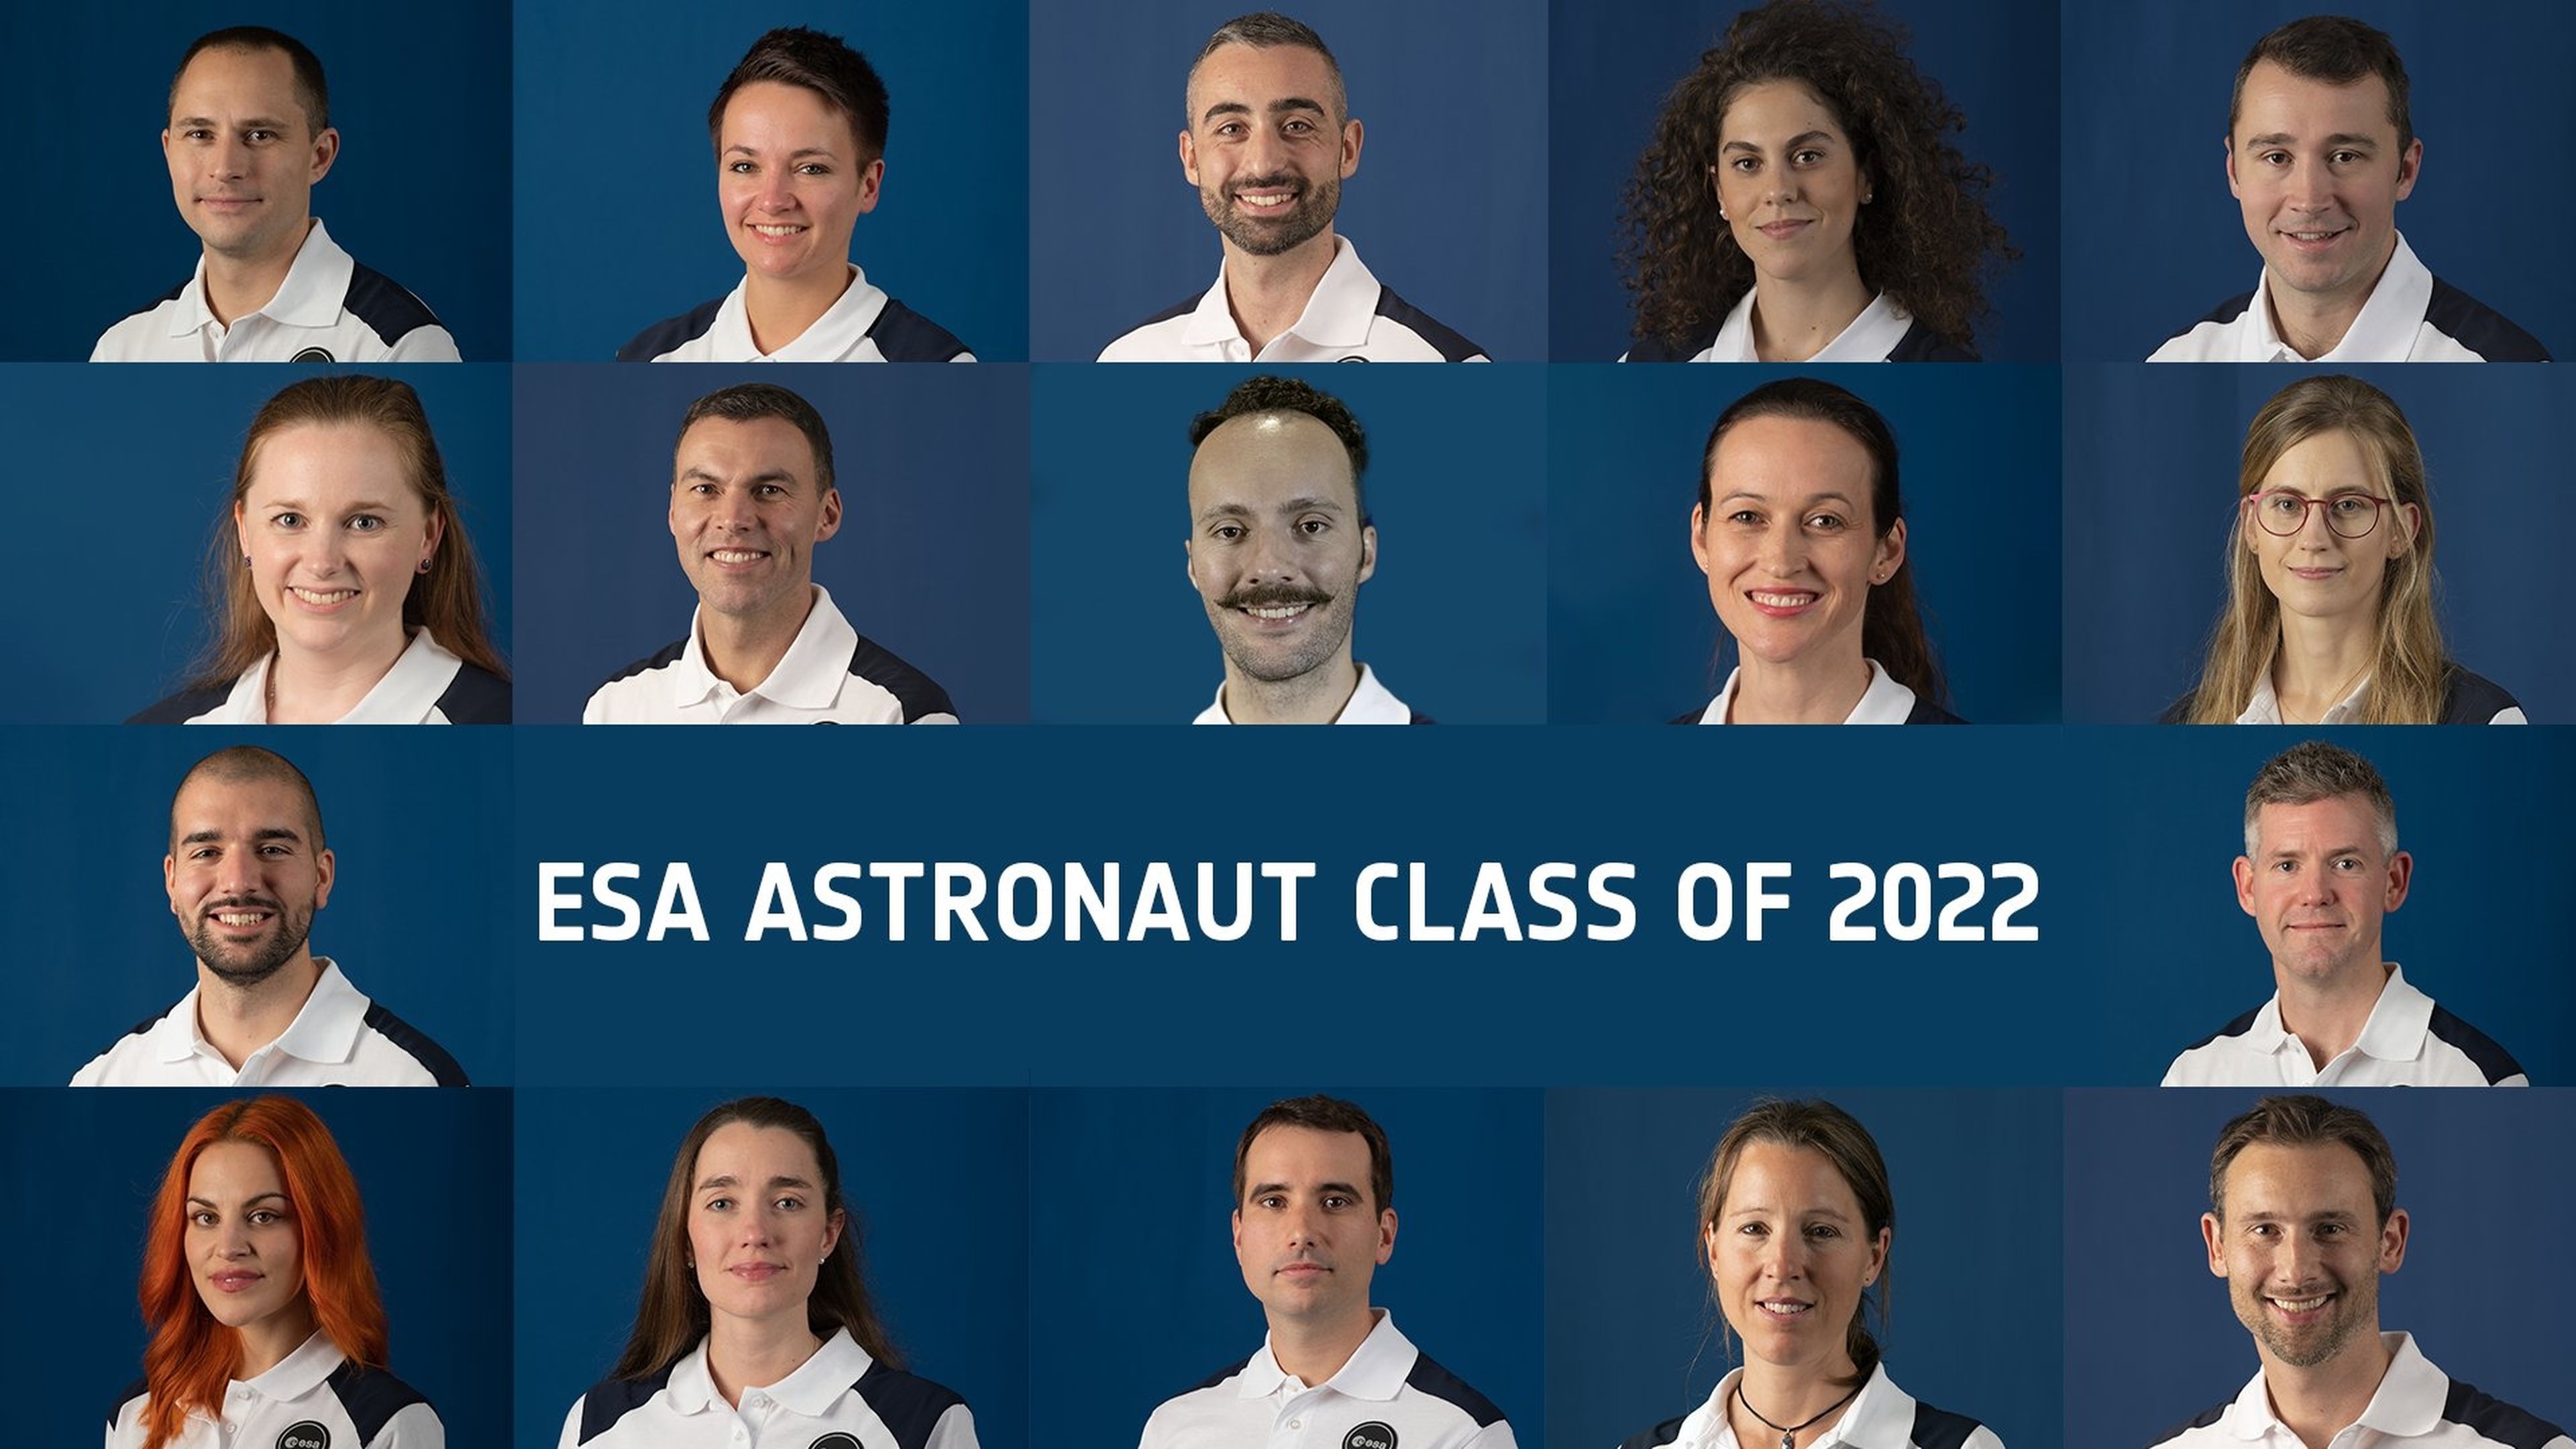 Promoción astronautas de la ESA en 2022